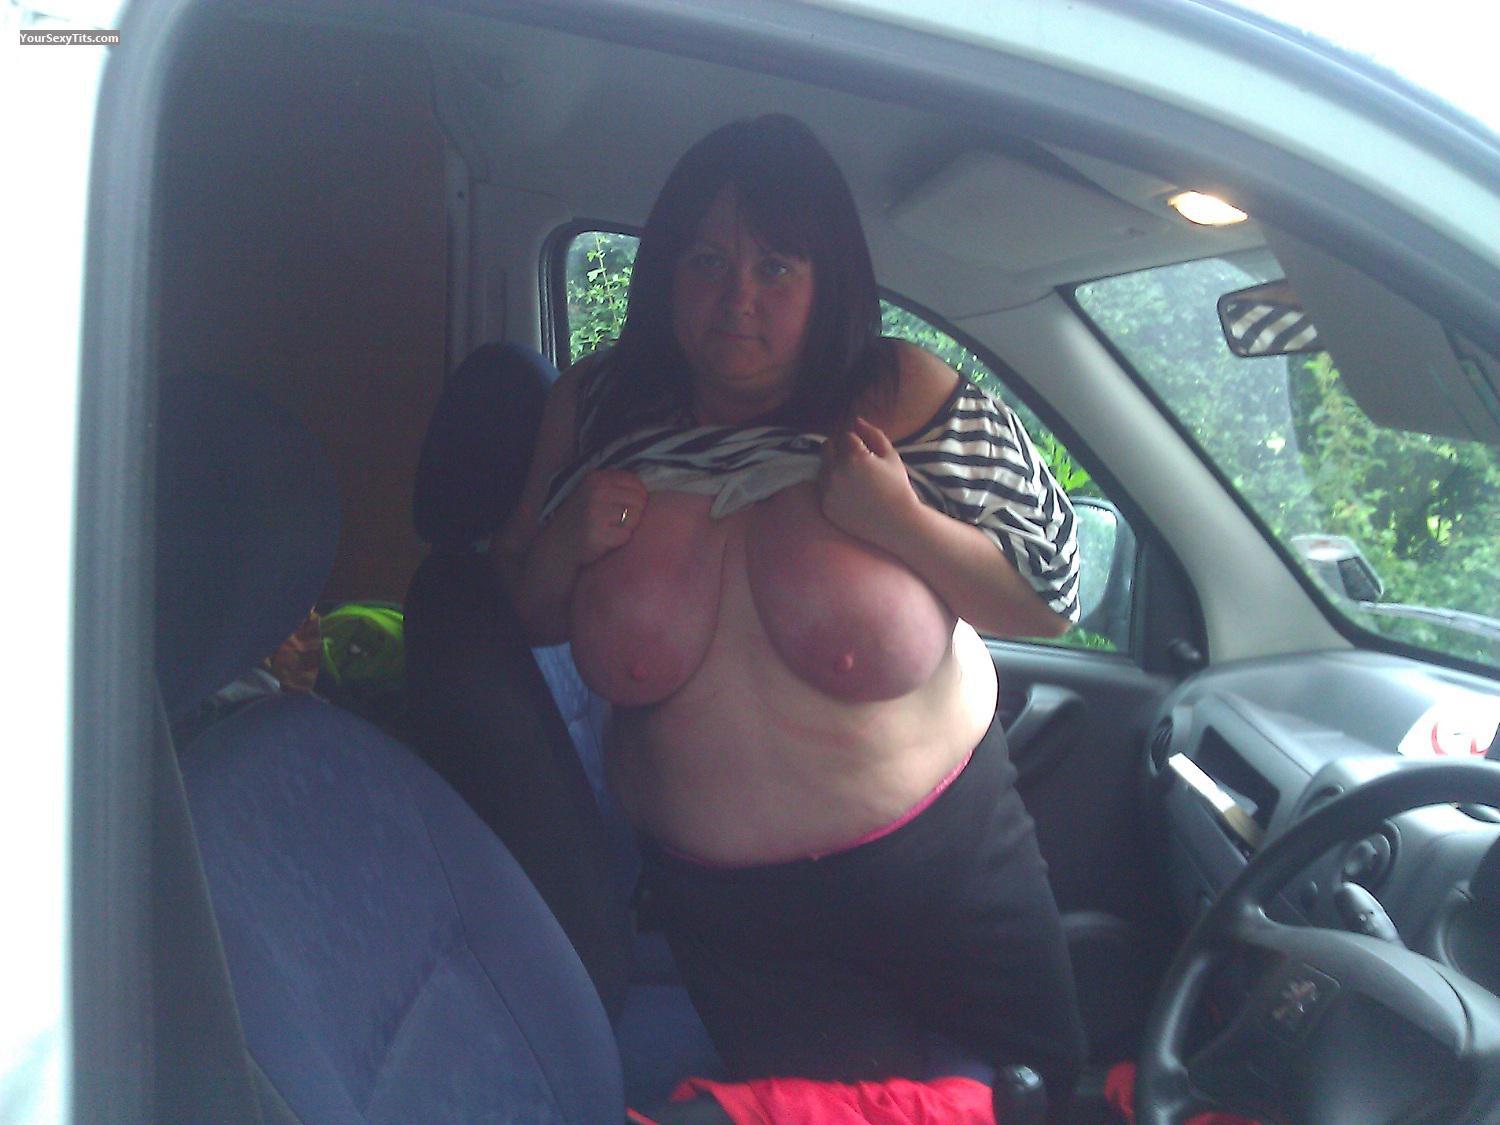 Mein Sehr grosser Busen Topless Selbstporträt von Nicknack